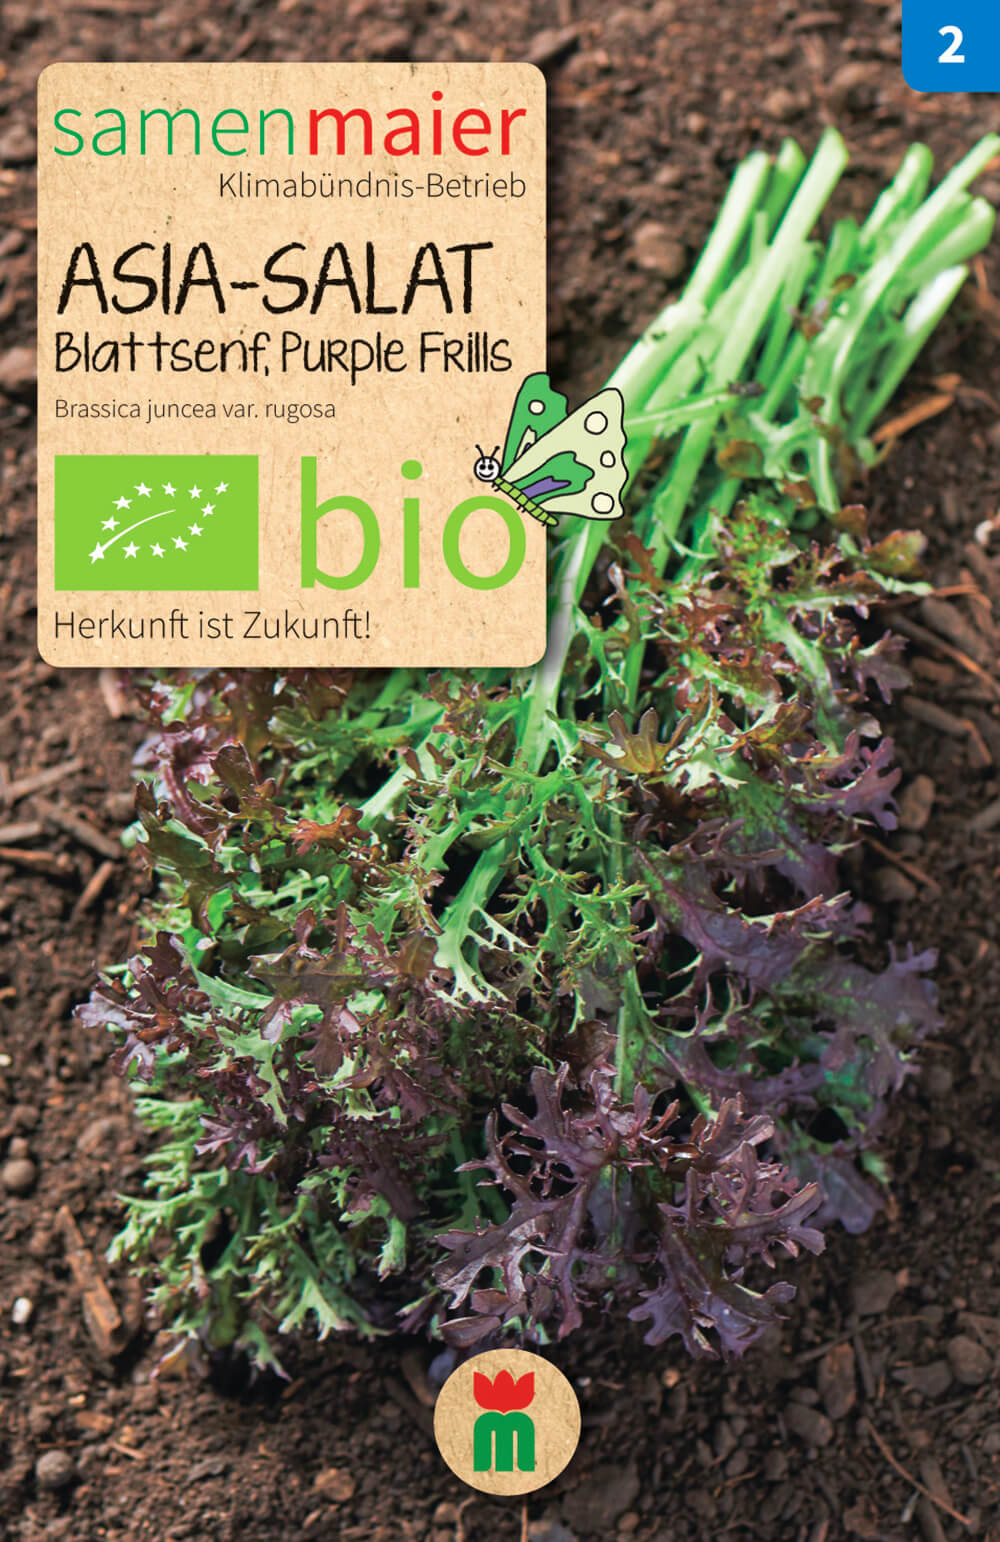 Beet-Box "Für die Gartenfee" | BIO Gemüsesamen-Sets von Samen Maier